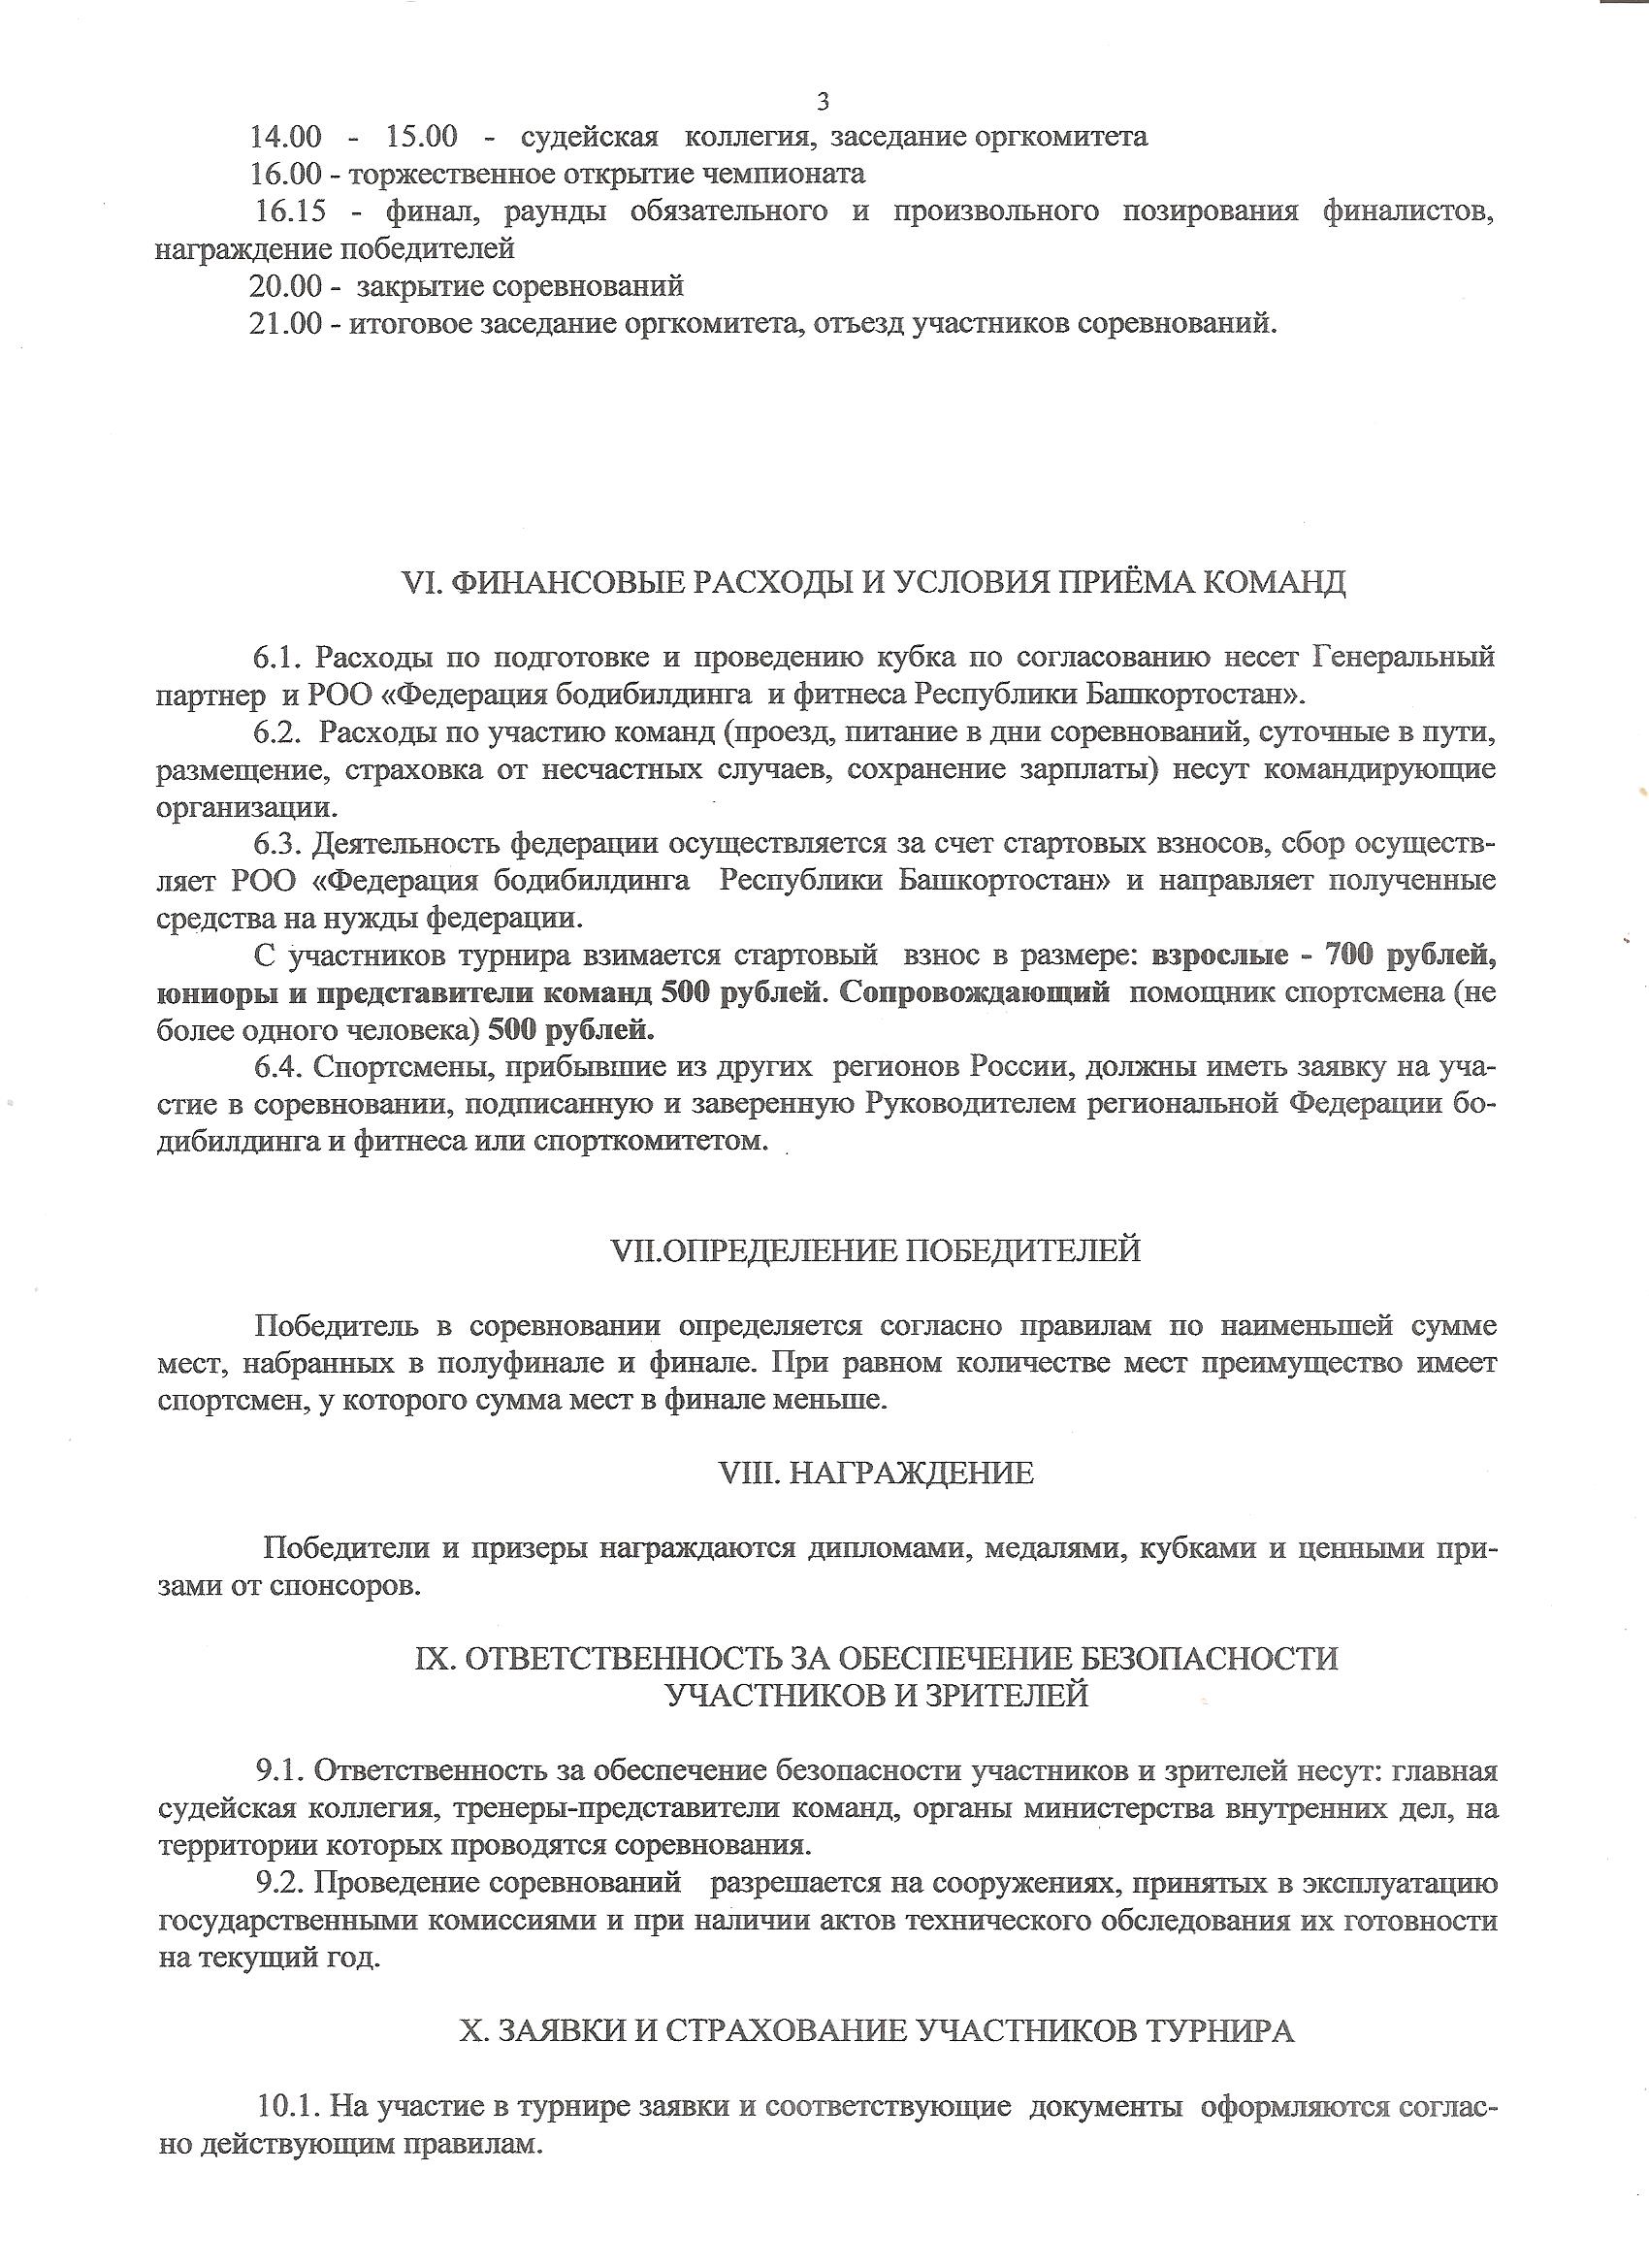 Regulations UfaAtlet 2014-05-16_003